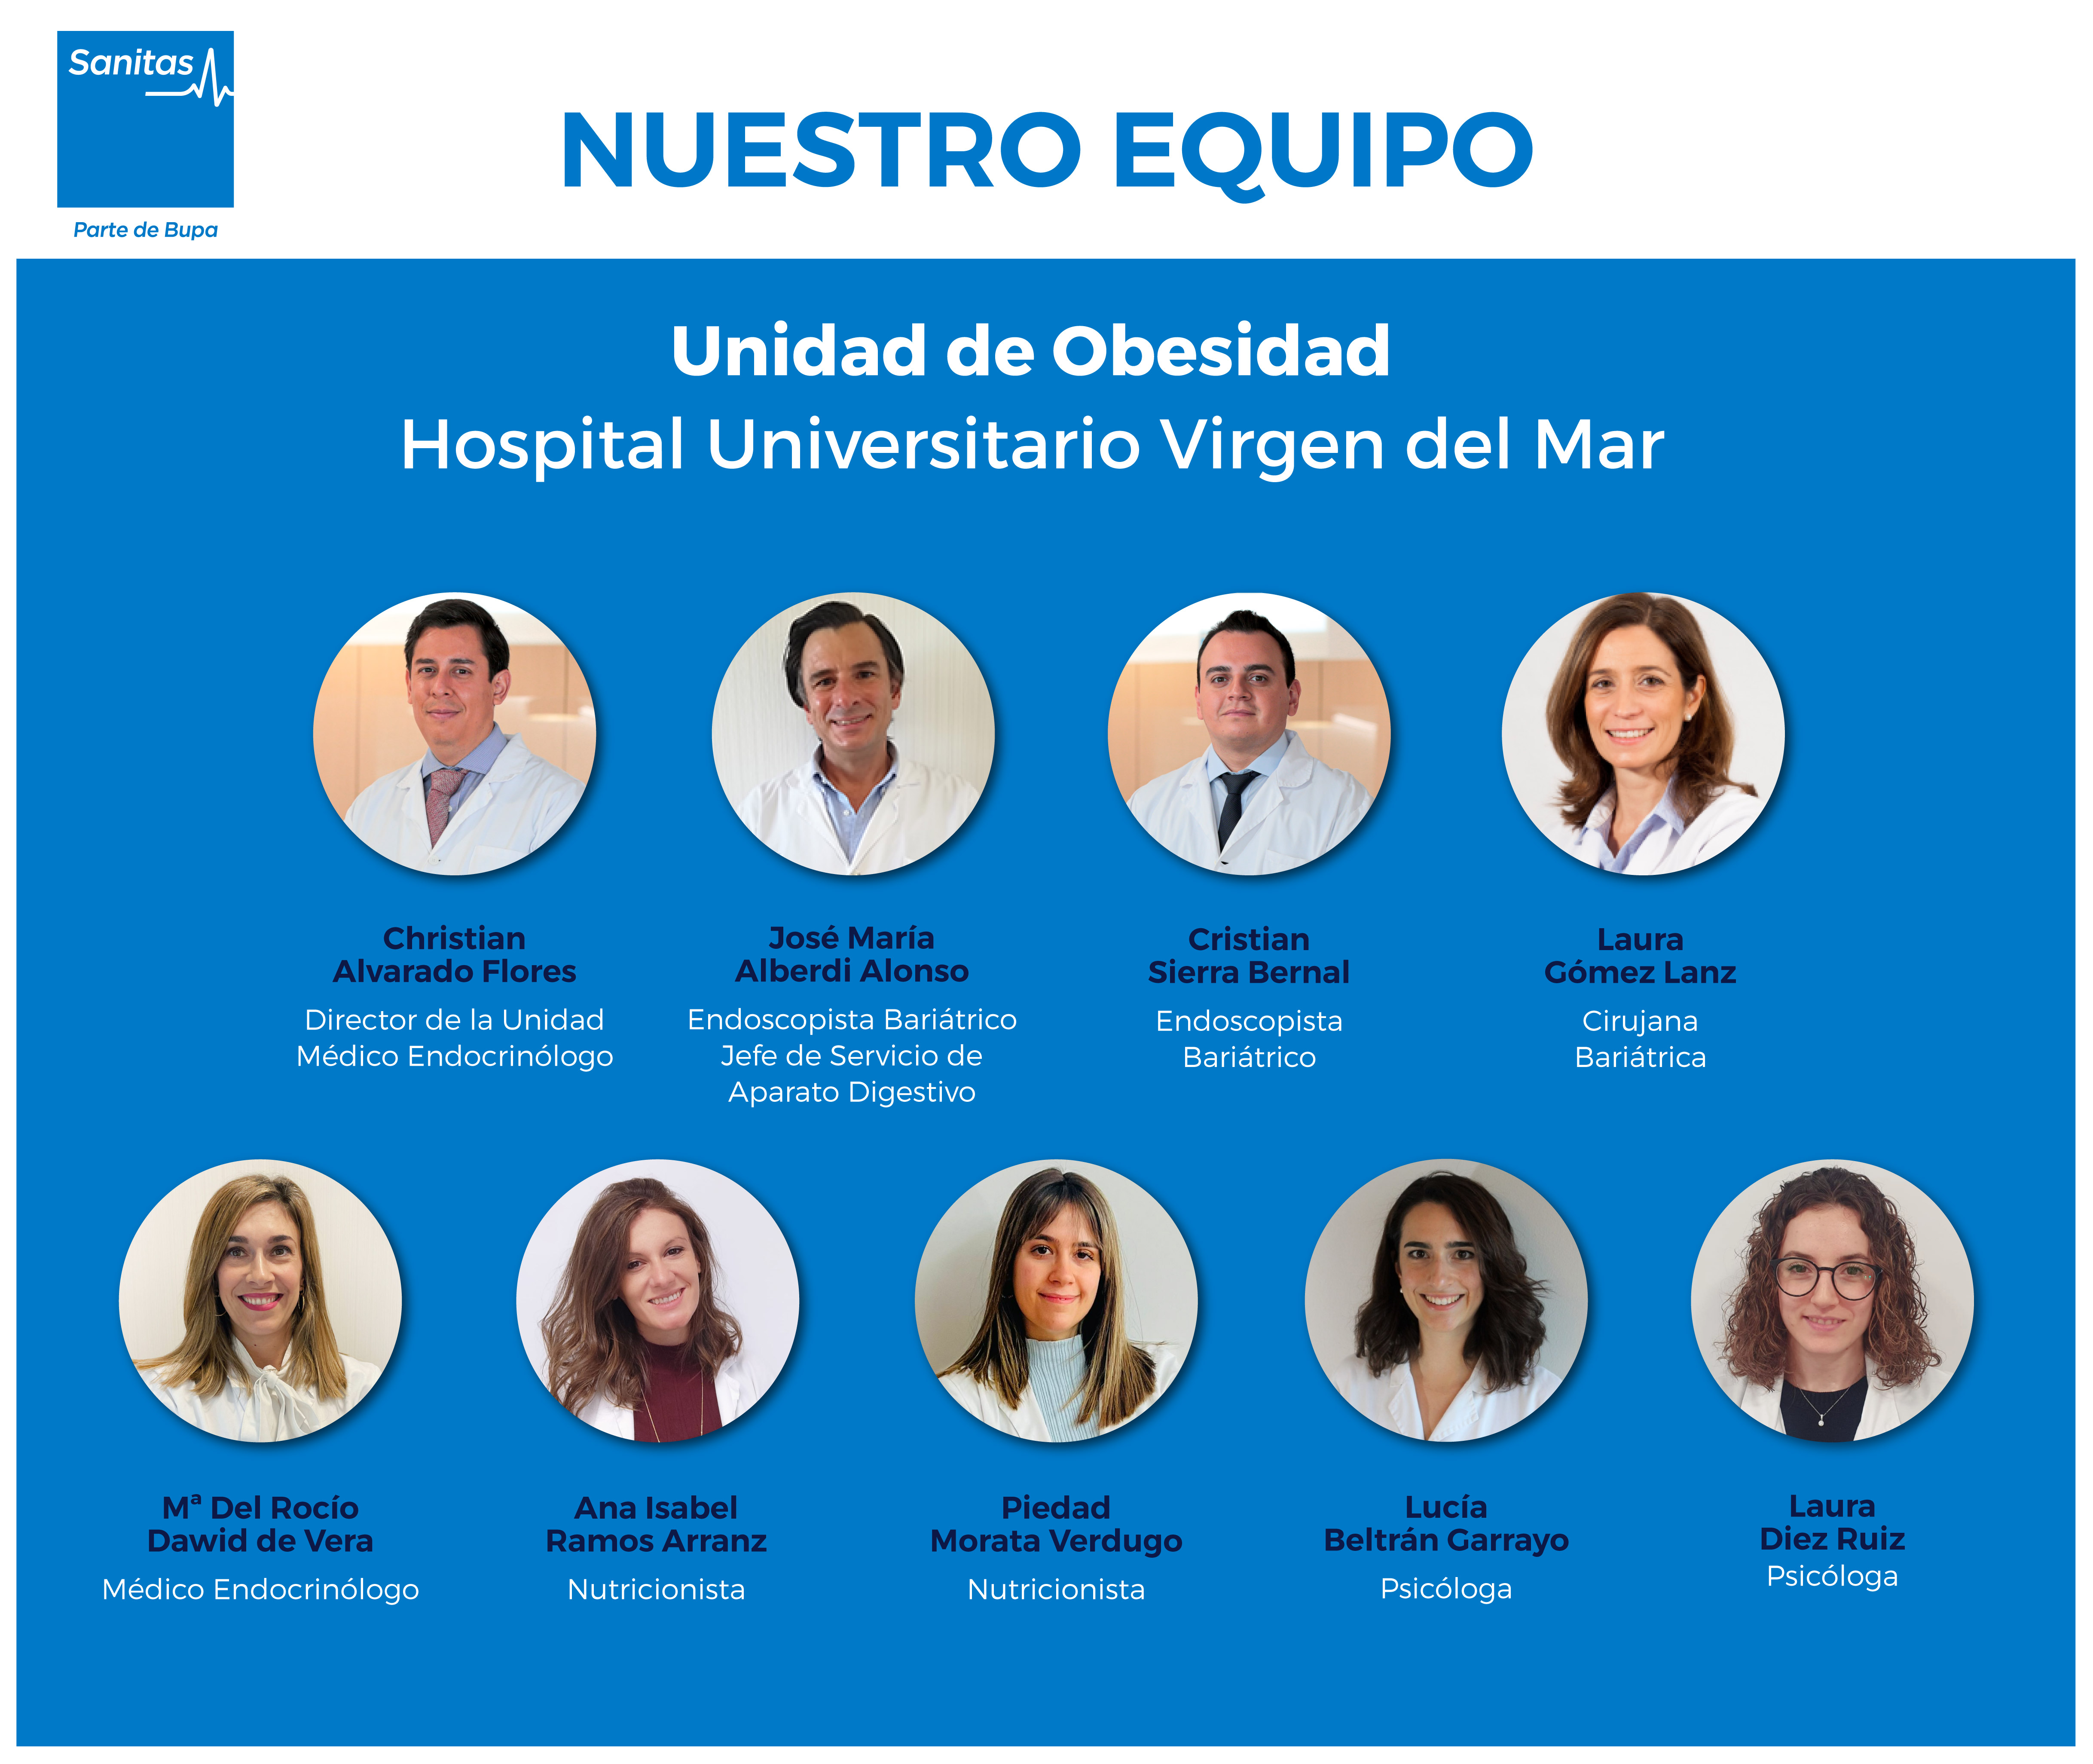 Unidad de Obesidad Hospital Universitario Virgen del Mar